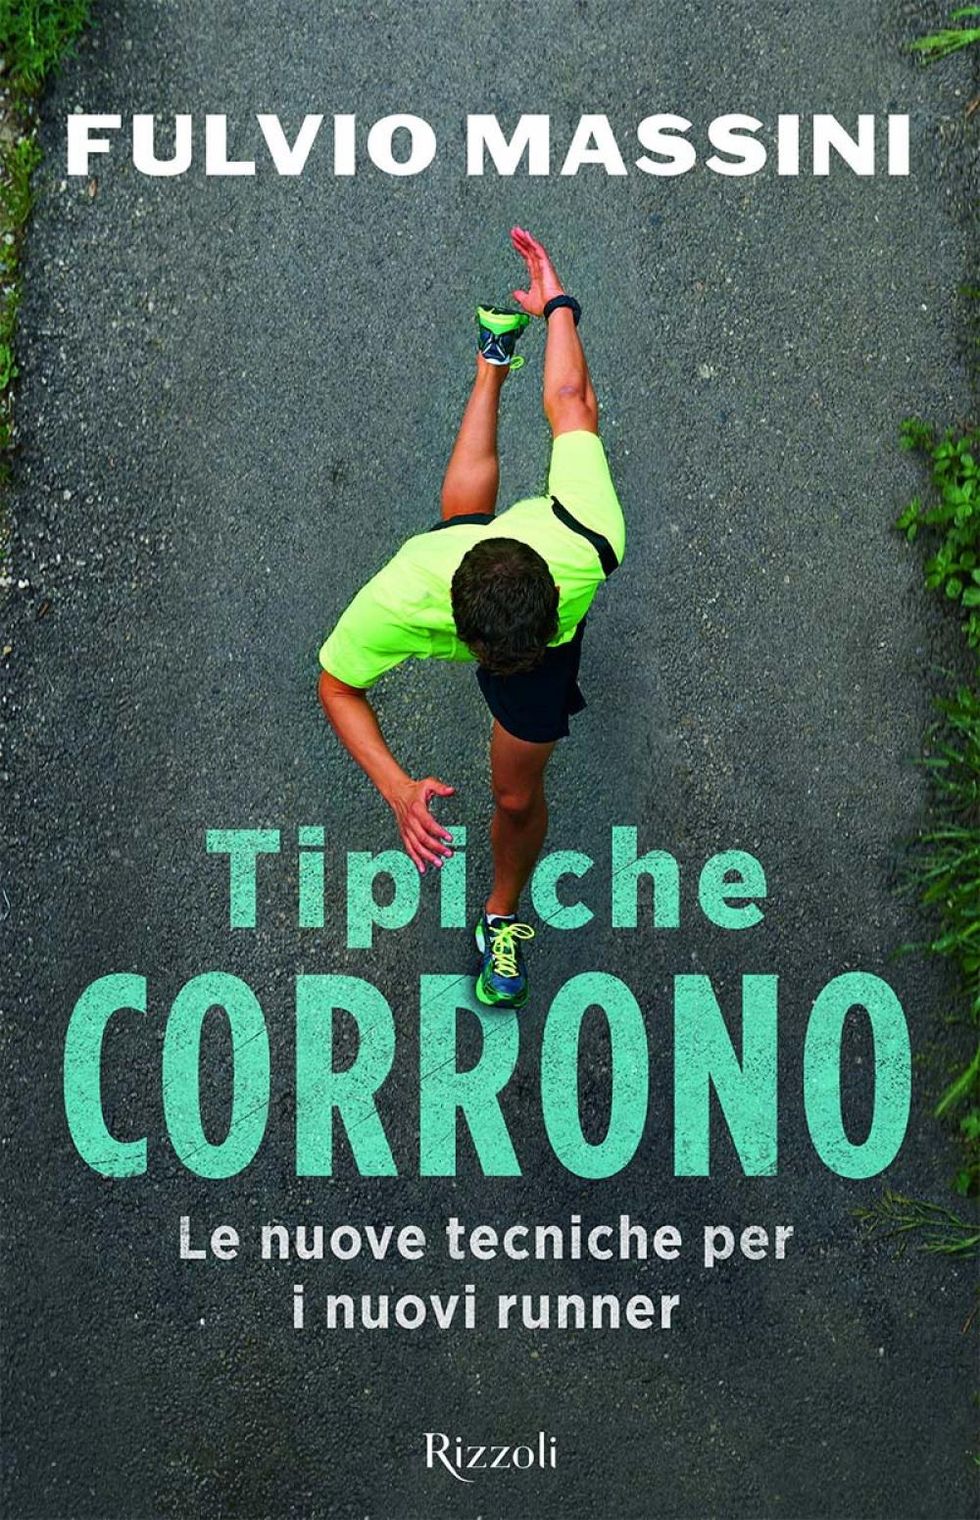 La cover di "Tipi che corrono. Le nuove tecniche per i nuovi runner”, ed Rizzoli